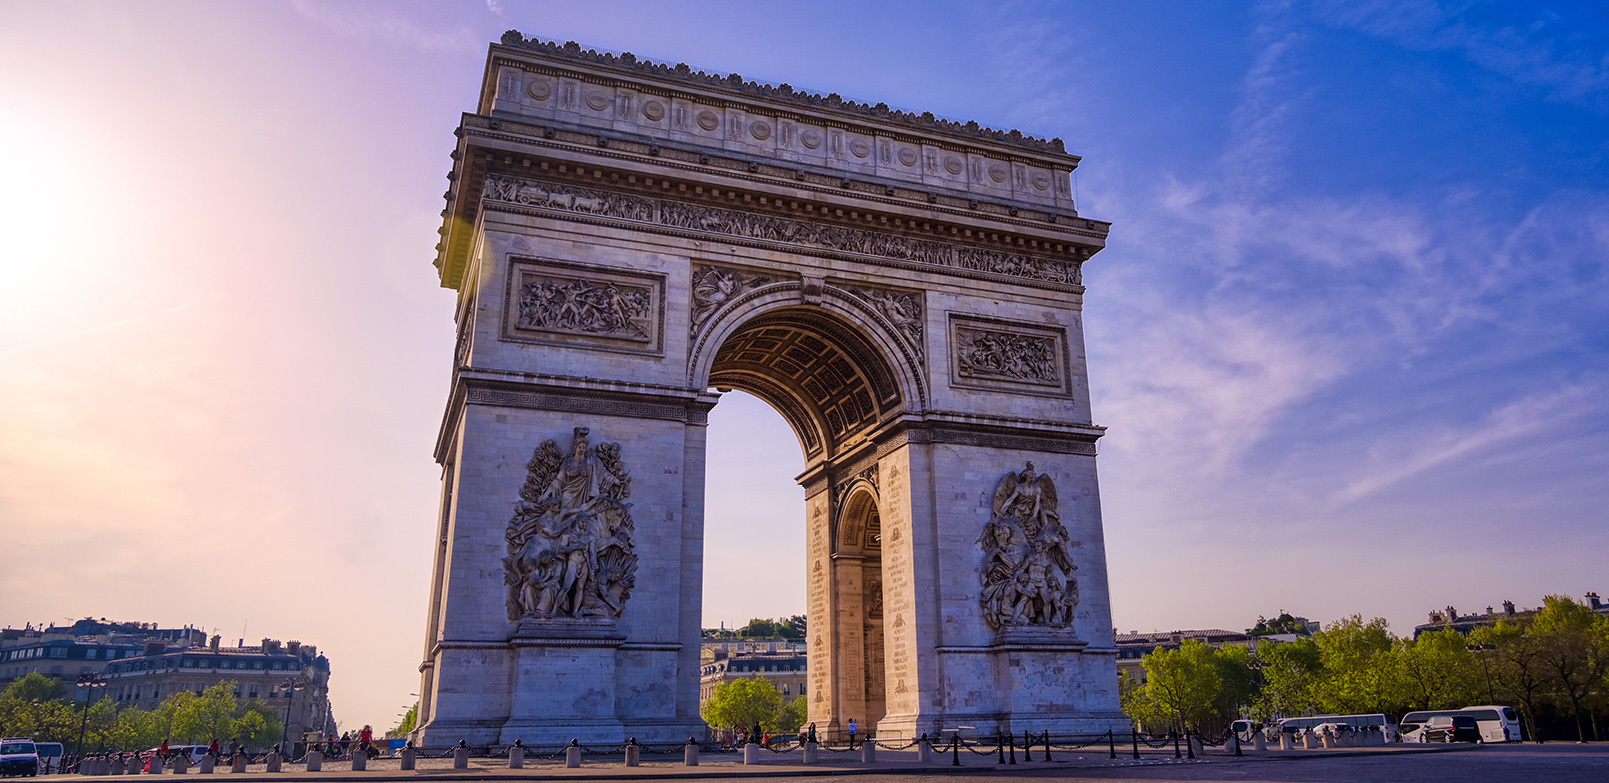 Prancis punya banyak sekali destinasi wisata memukau yang wajib dikunjungi untuk liburan berkesan.